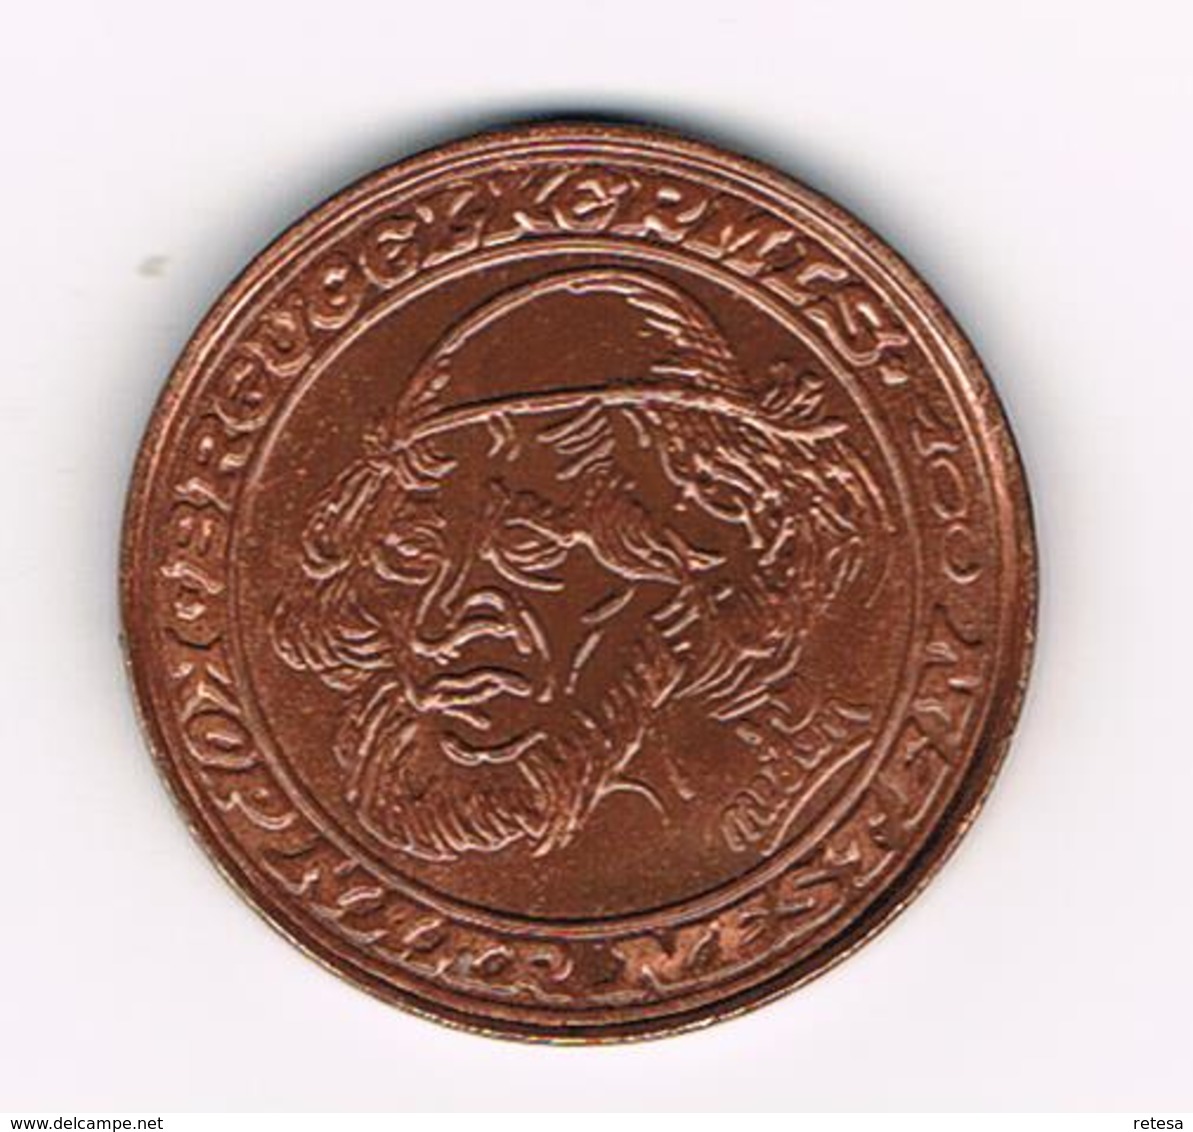 & BREUGELPENNING ONTWORPEN Door NESTEN 1982 - Elongated Coins